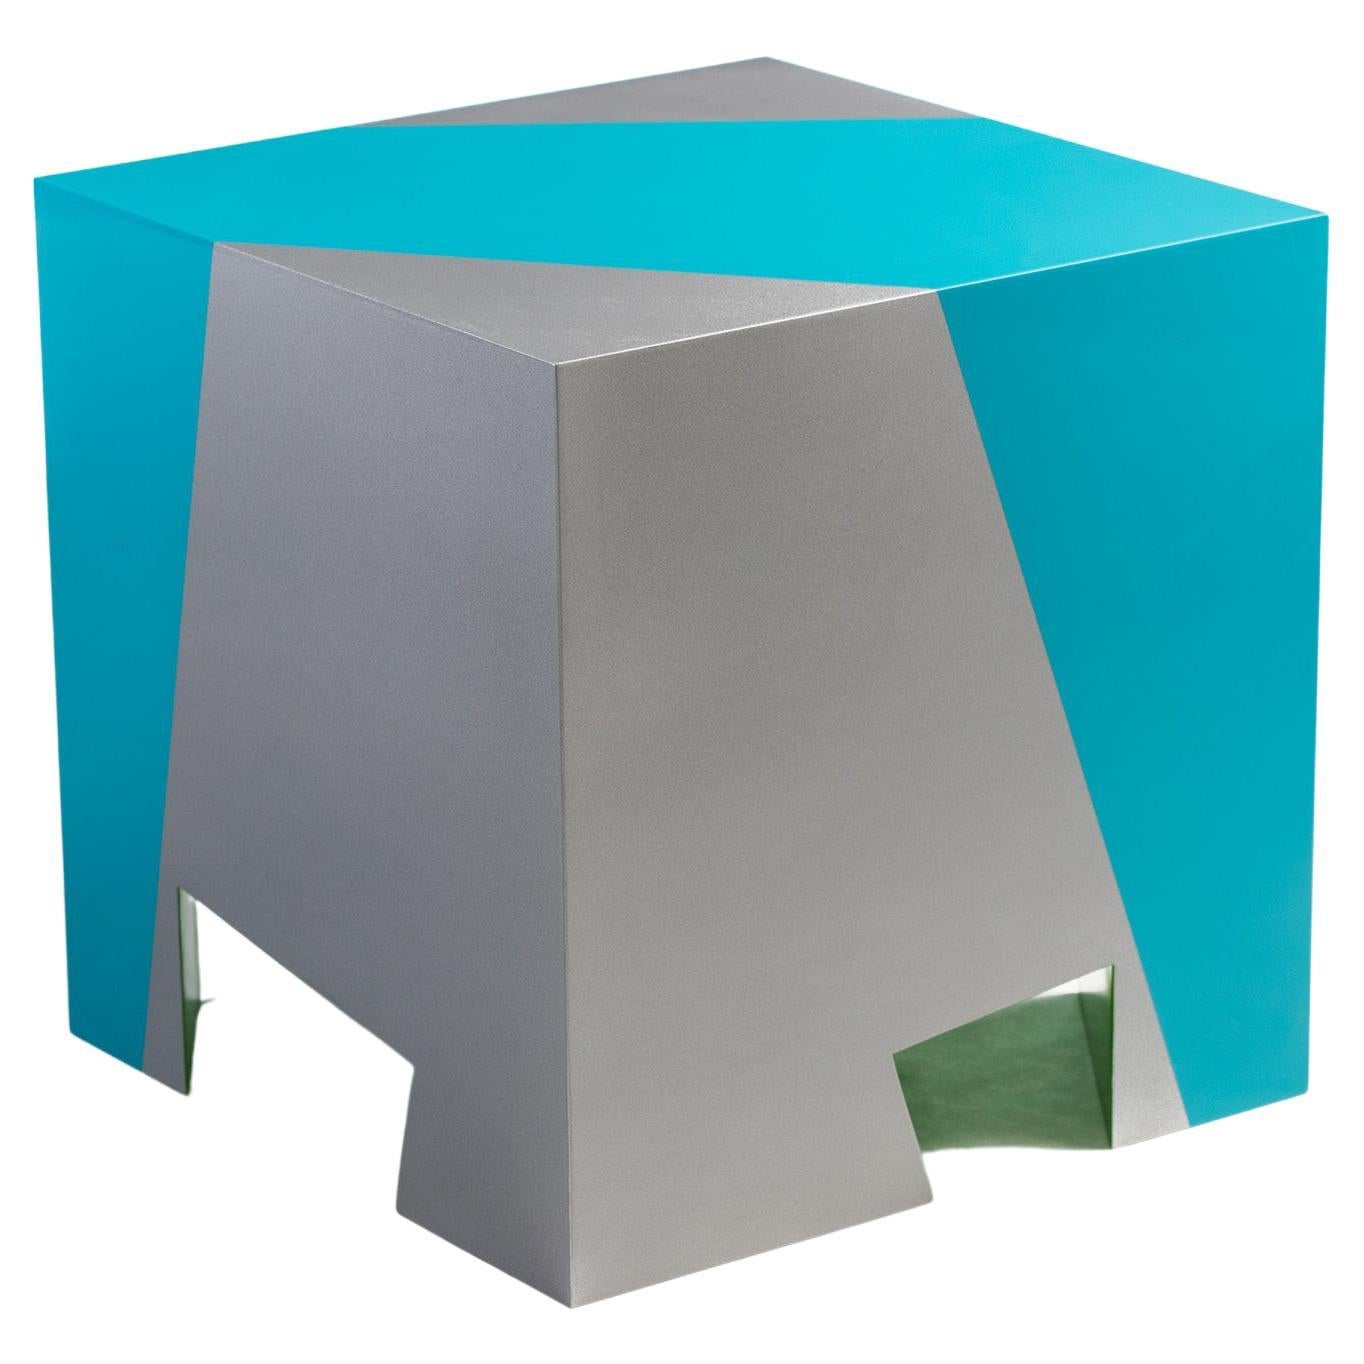 Seduta impilabile contemporanea Sissi blu e verde in alluminio di Altreforme